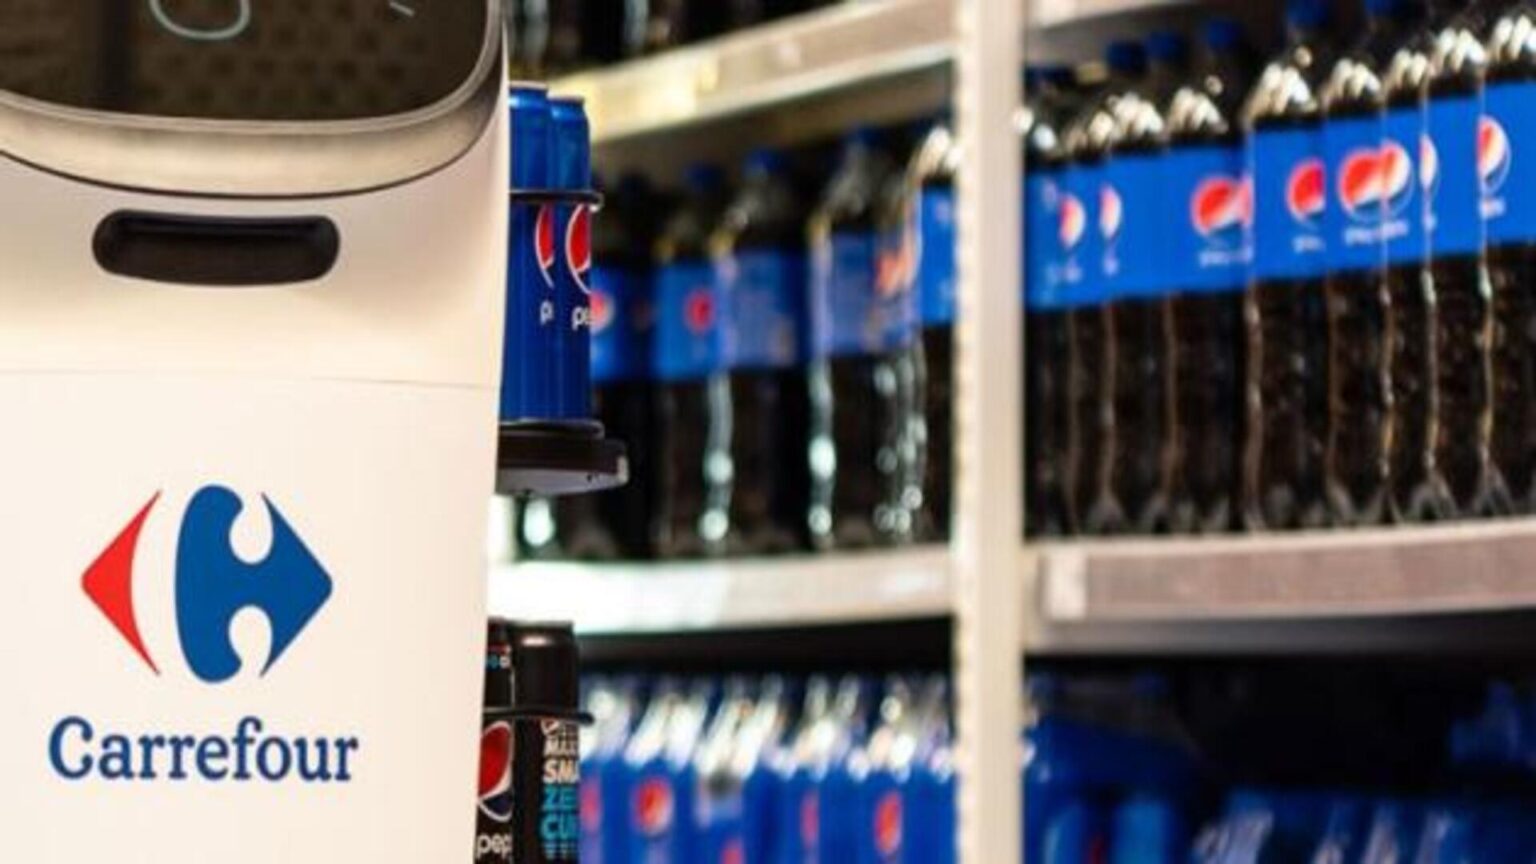 Pepsi Carrefou 1704393353863.jpg carrefour non vendera piu prodotti pepsi in francia a causa degli aumenti di prezzo inaccettabili